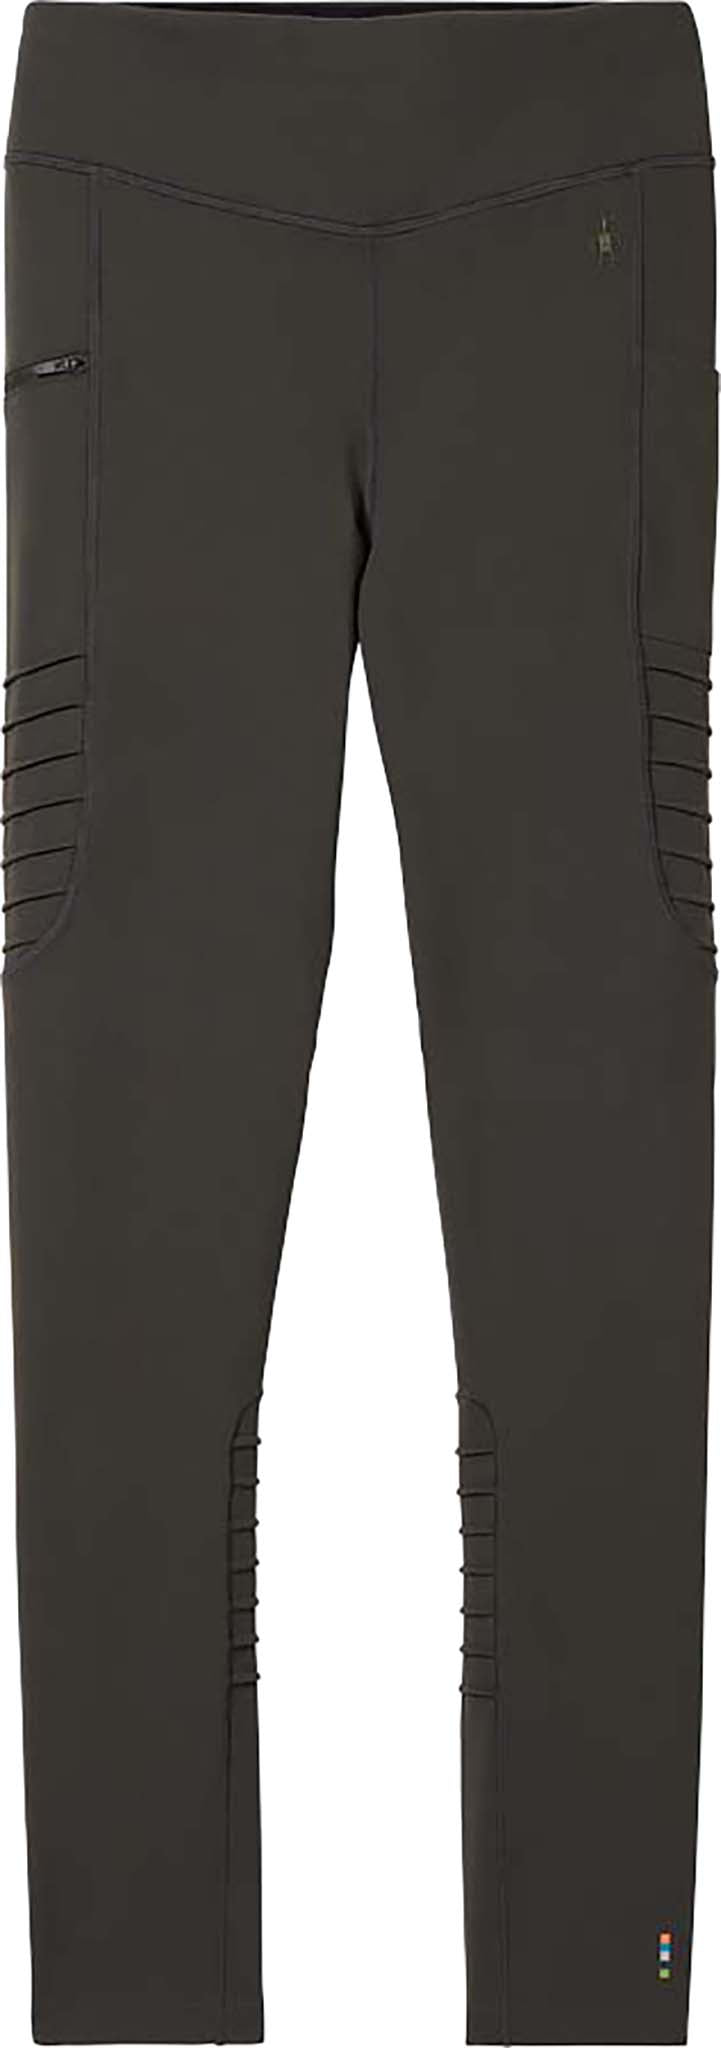 Spyder Active Black High Rise Fleece Lined Back Pocket Leggings Sz L -  Athletic apparel